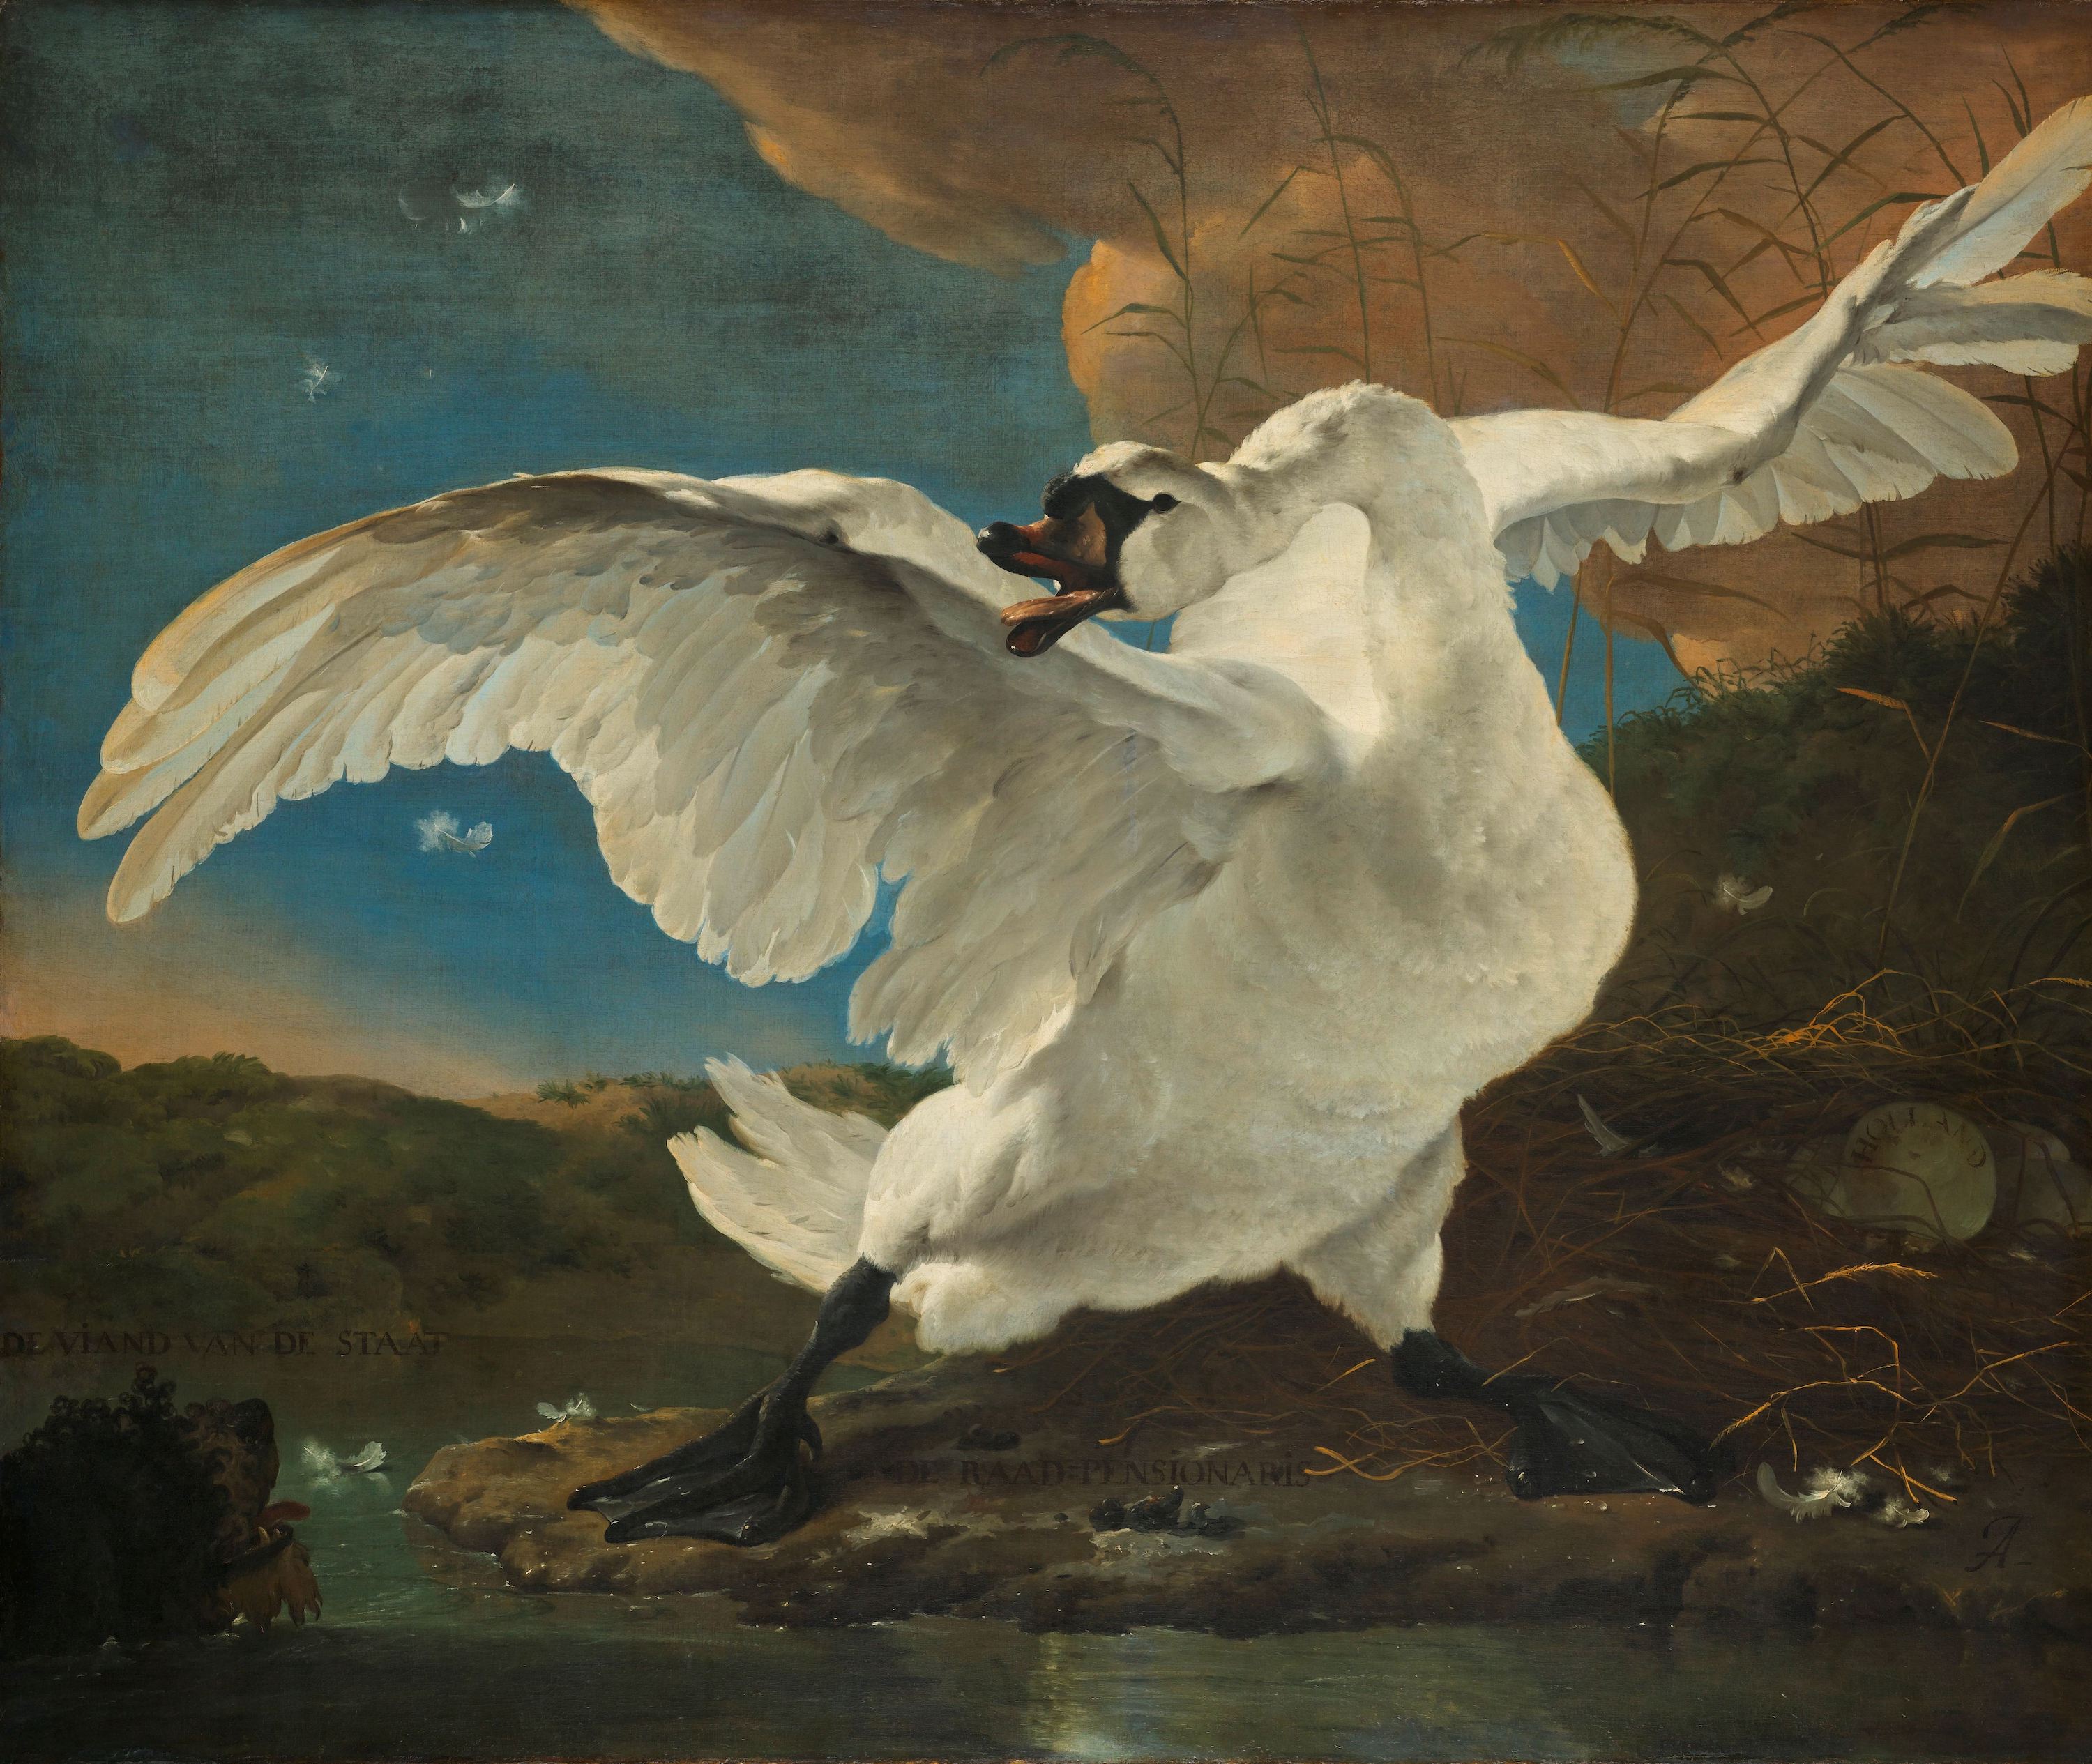 受驚的天鵝 by Jan Asselijn - c. 1650 - 144 × 171 cm 